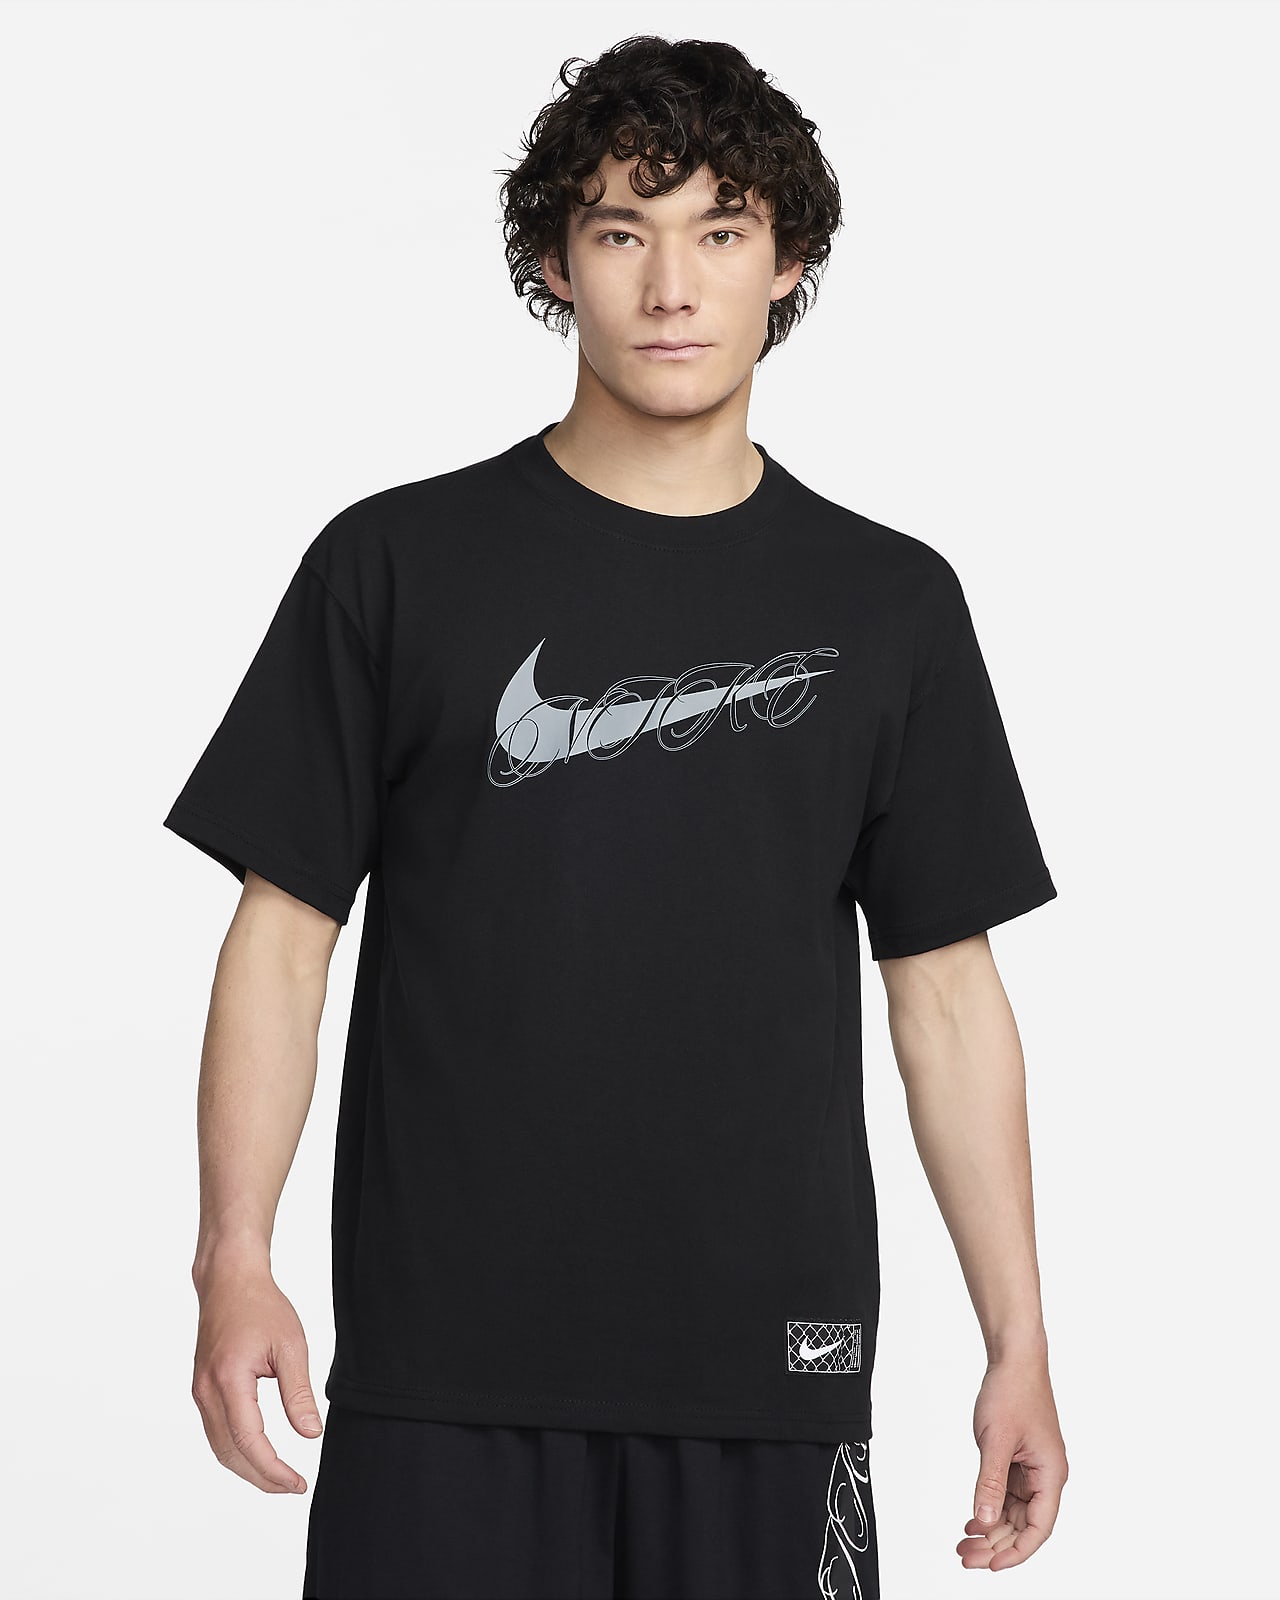 Nike 男款 Max90 籃球 T 恤